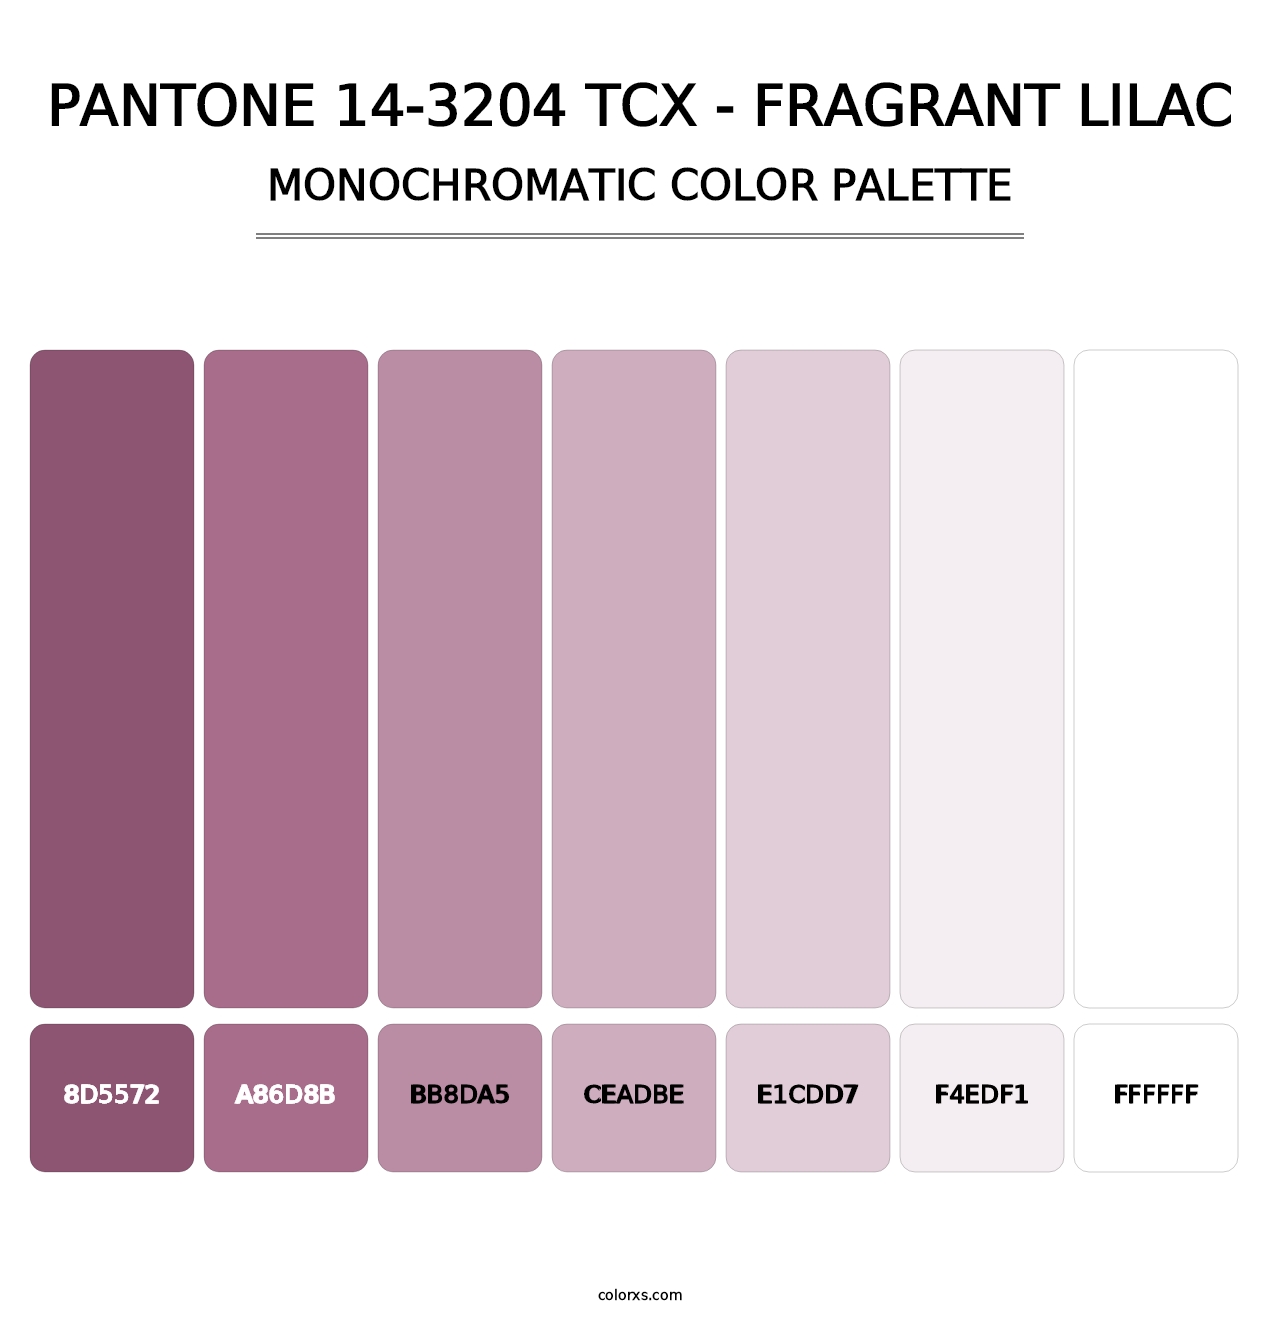 PANTONE 14-3204 TCX - Fragrant Lilac - Monochromatic Color Palette